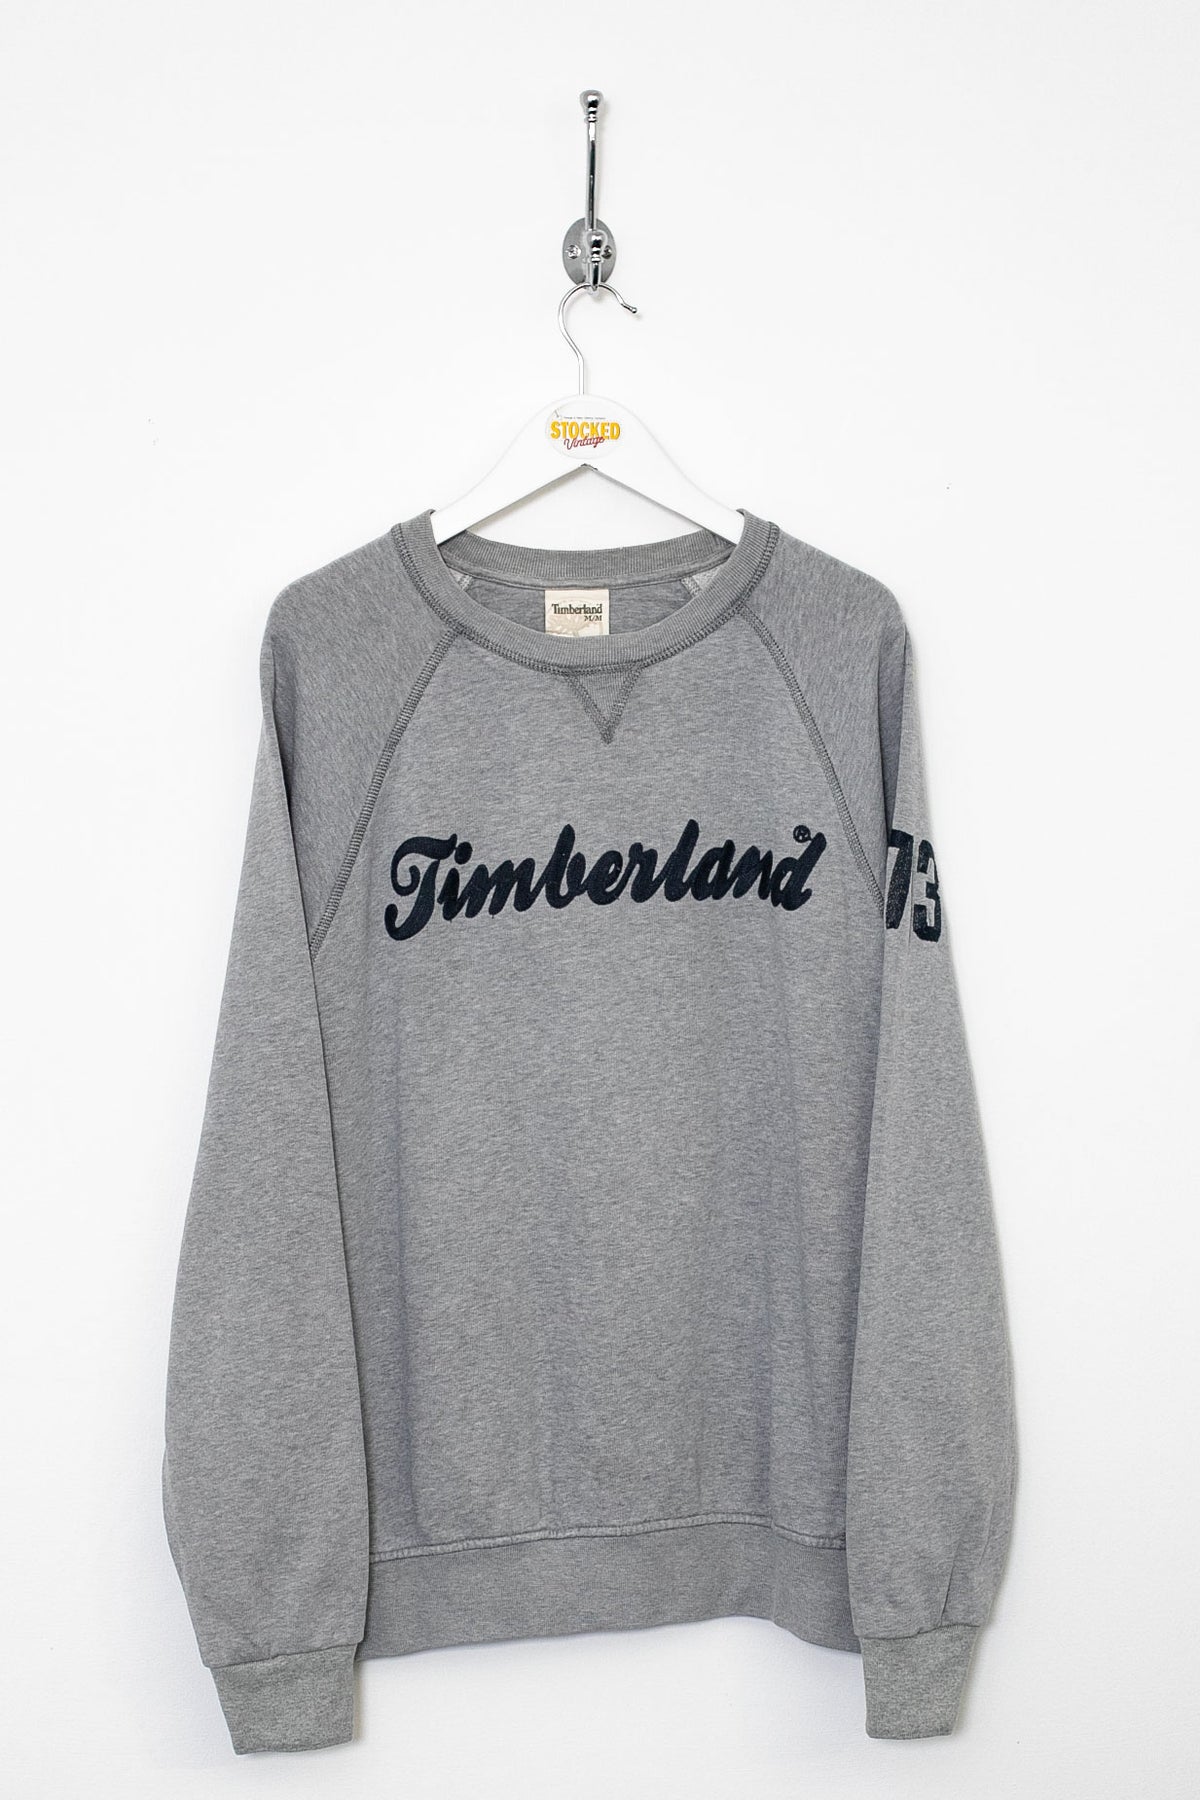 00s Timberland Sweatshirt (M)